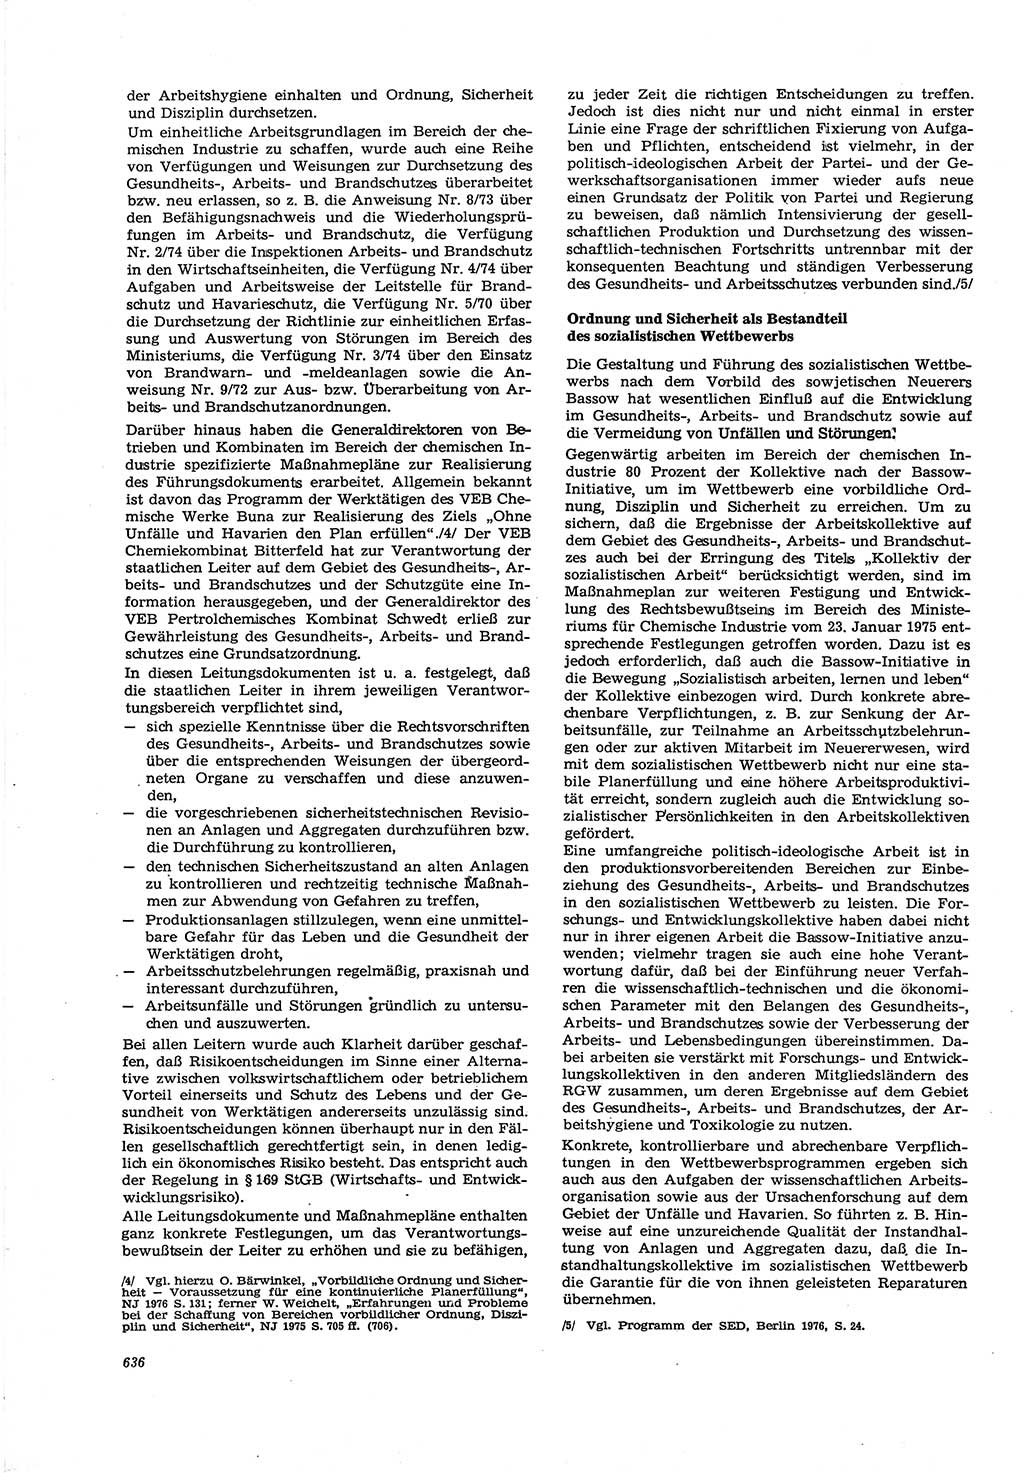 Neue Justiz (NJ), Zeitschrift für Recht und Rechtswissenschaft [Deutsche Demokratische Republik (DDR)], 30. Jahrgang 1976, Seite 636 (NJ DDR 1976, S. 636)